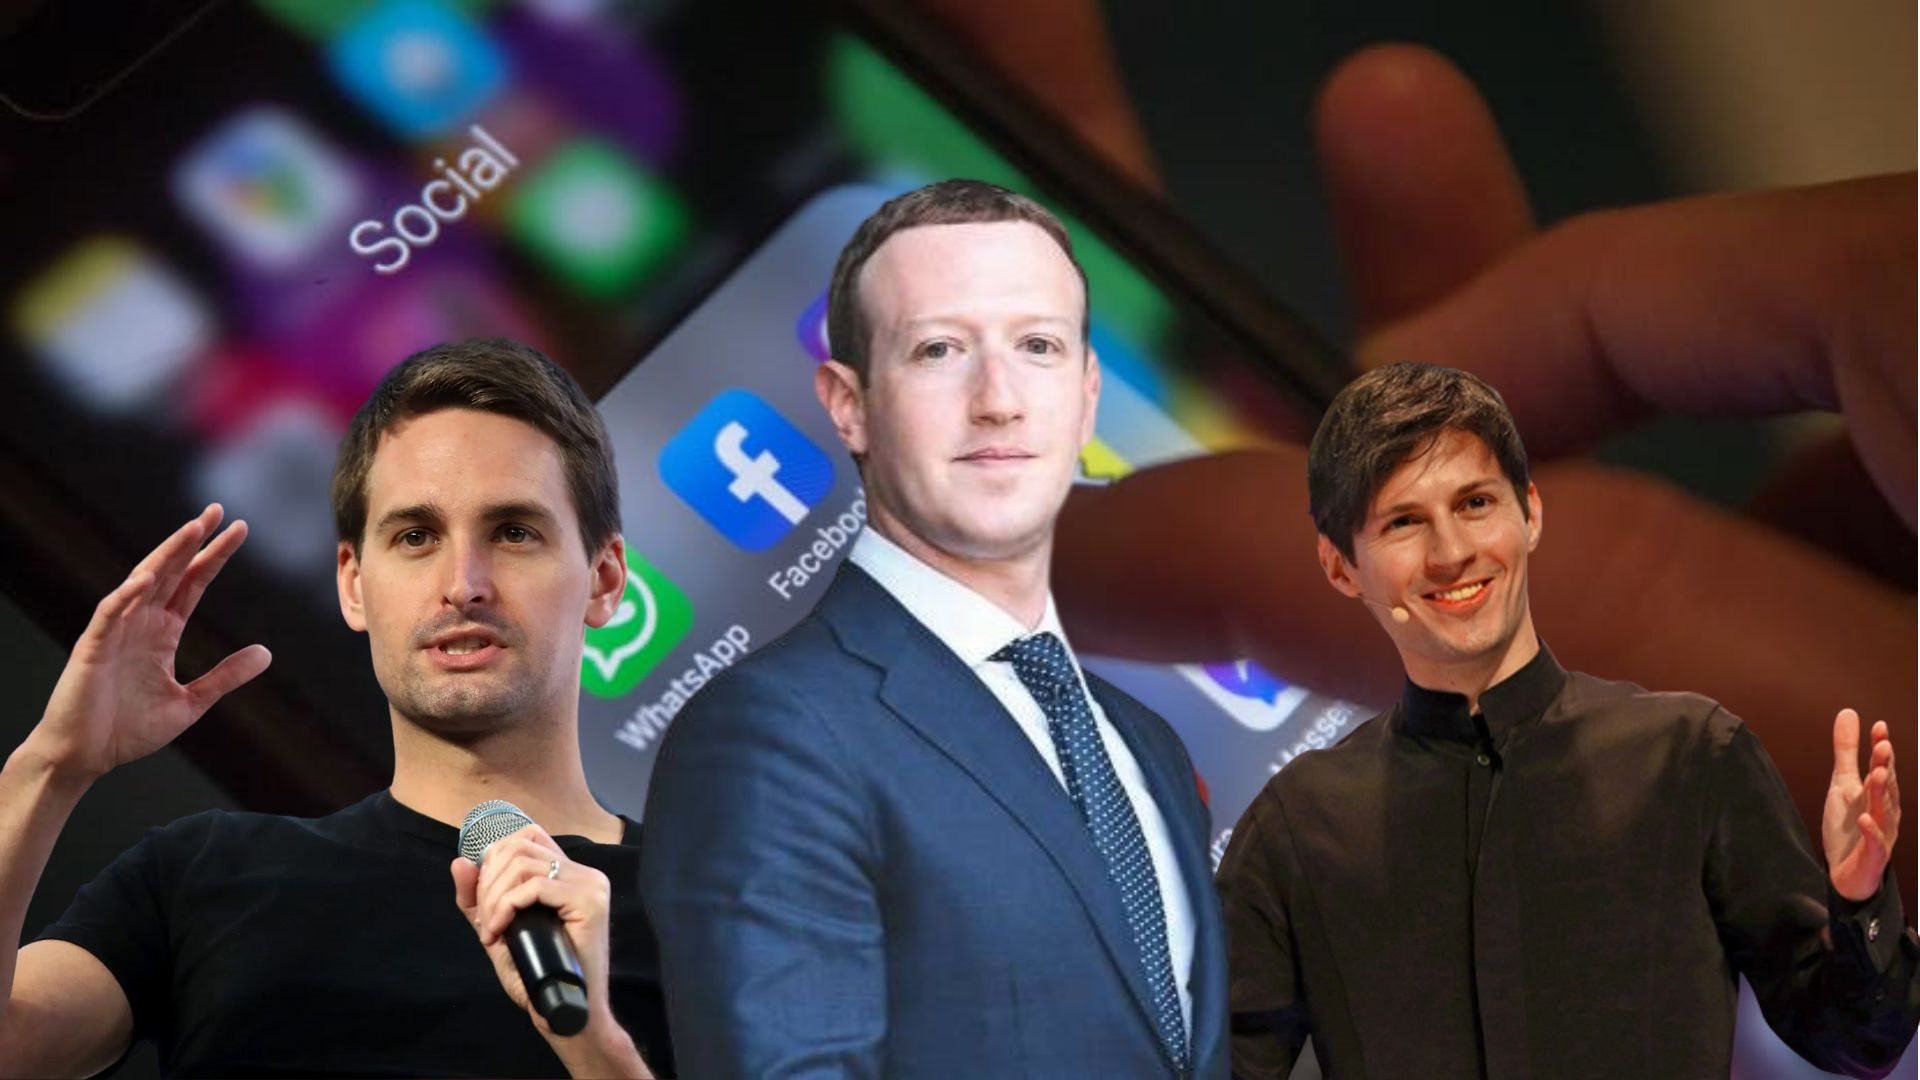 'Soi' tài sản của các ông chủ mạng xã hội: Mark Zuckerberg không còn giàu nhất nhưng cách ông chủ Telegram mức ném tiền qua cửa sổ mới là chuyện bất ngờ